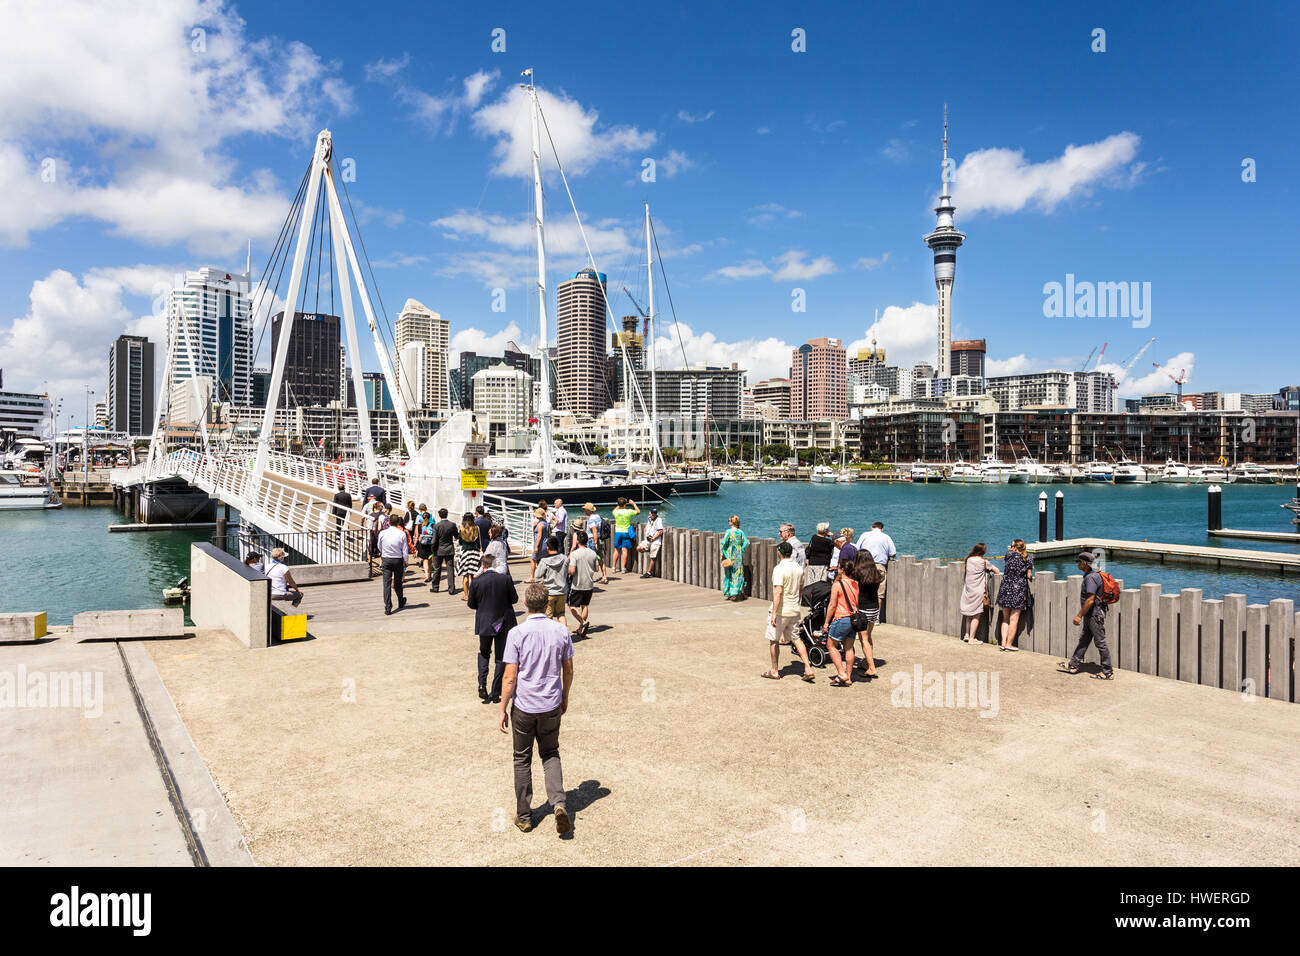 AUCKLAND, Neuseeland - 1. März 2017: Menschen überqueren die Brücke verbindet den Wynyard Bezirk zum Viadukt Hafen in Auckland, Neuseeland größten Stockfoto